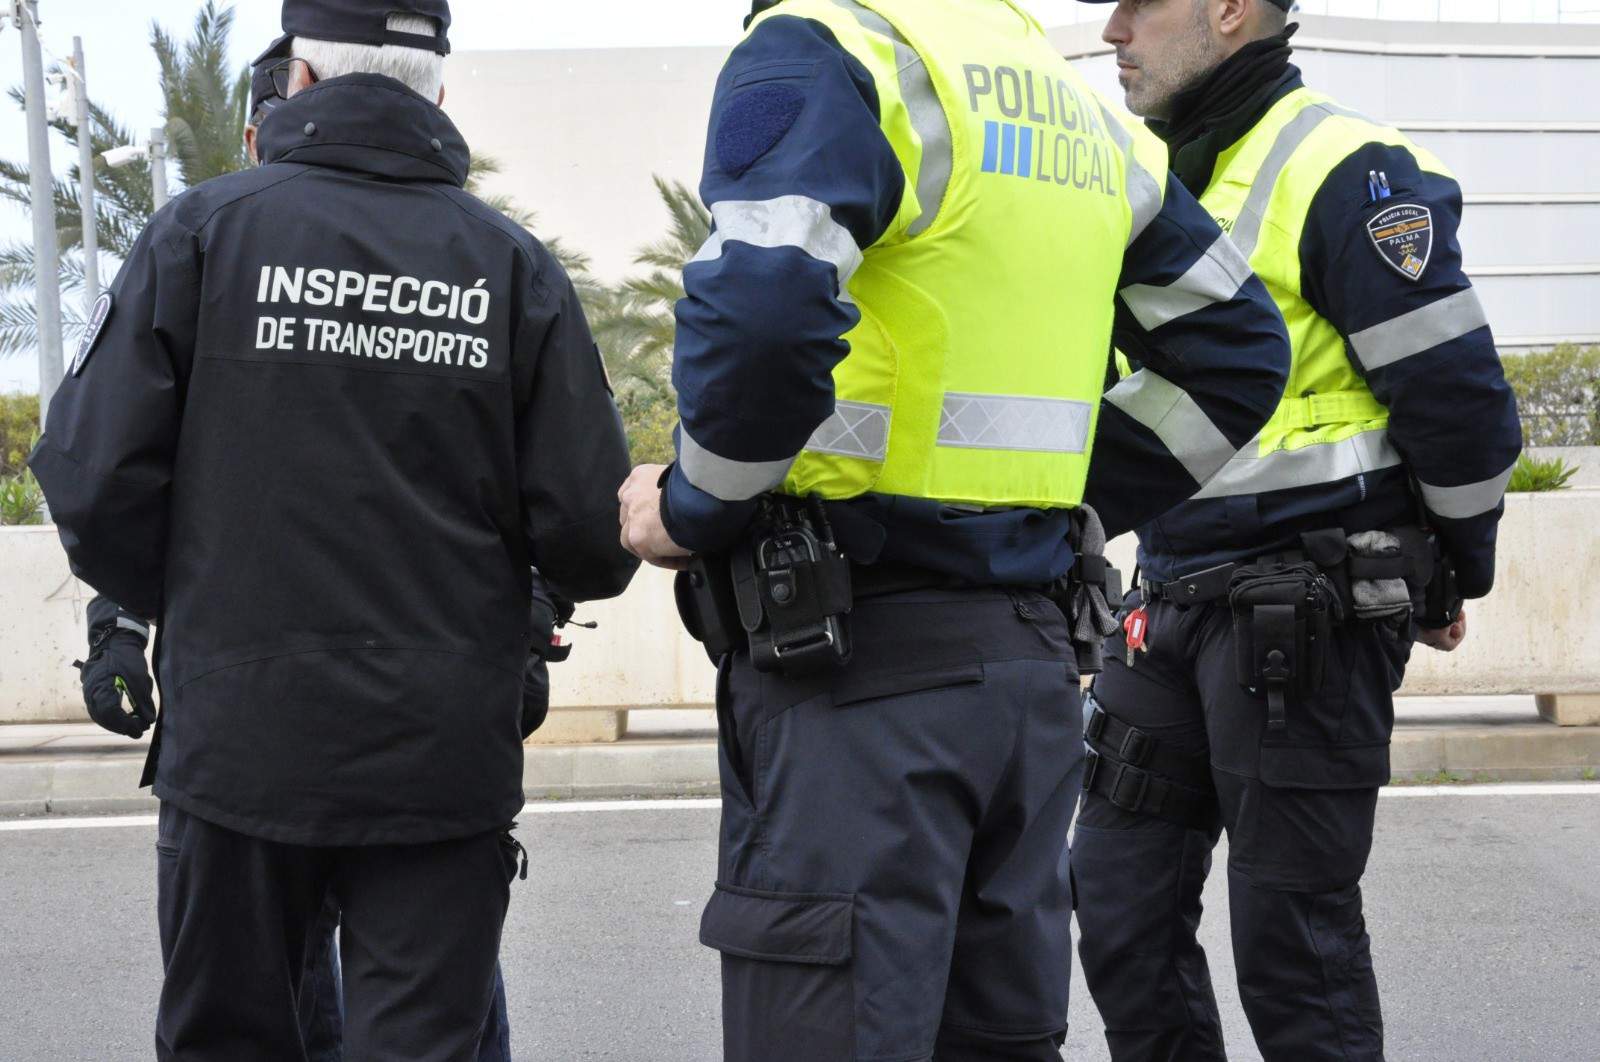 Más de 70 denuncias en el aeropuerto de Palma en la campaña de control y contra el intrusismo en el transporte